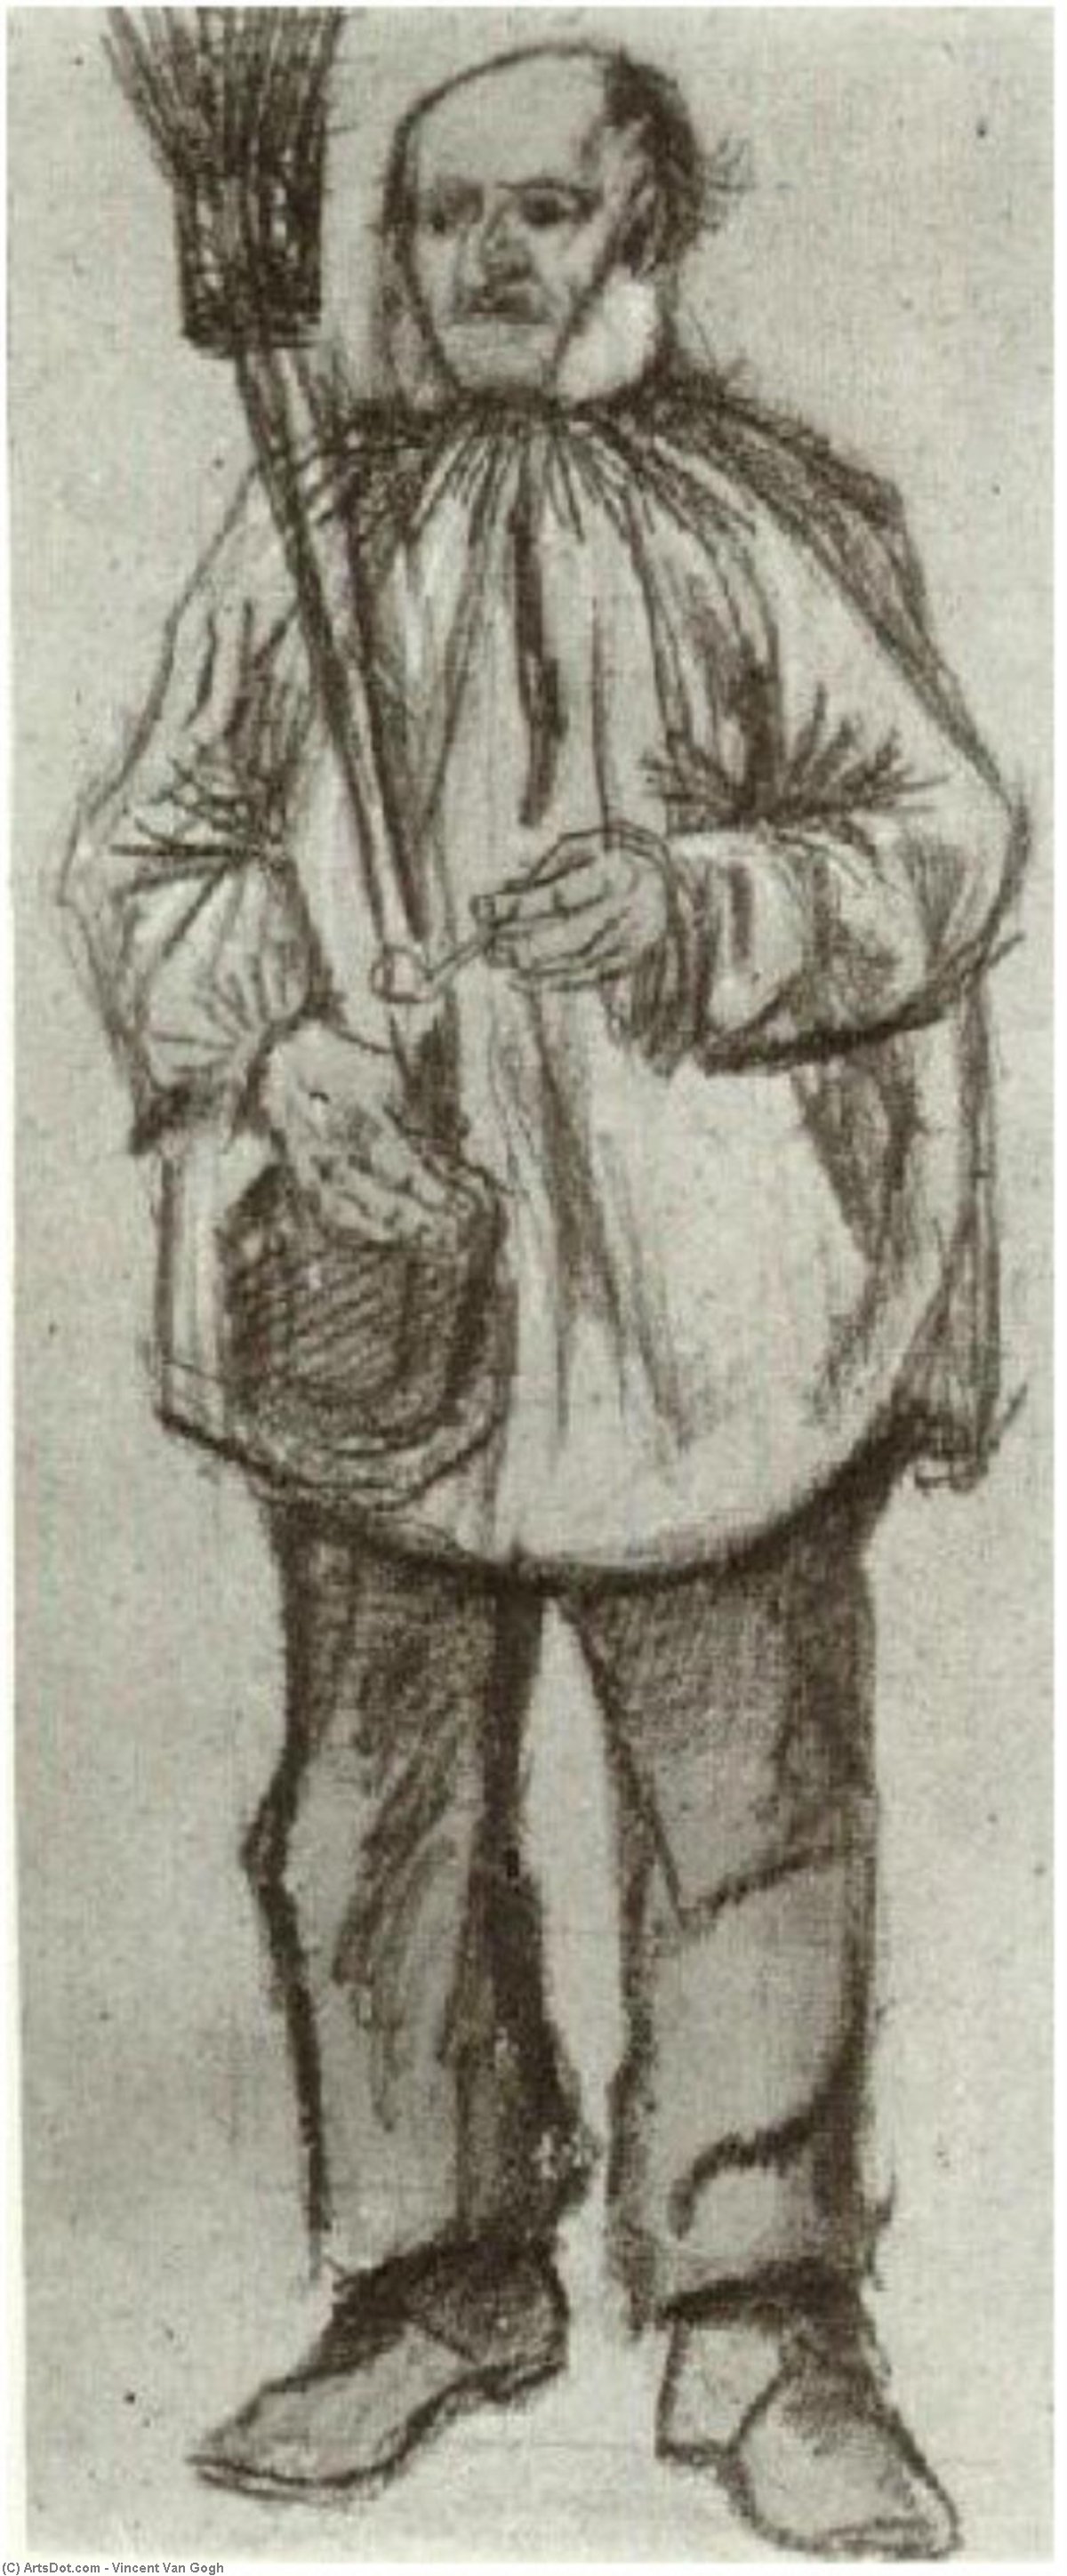 Wikioo.org - Bách khoa toàn thư về mỹ thuật - Vẽ tranh, Tác phẩm nghệ thuật Vincent Van Gogh - Orphan Man, Wearing a Blouse, with Broom and Pipe